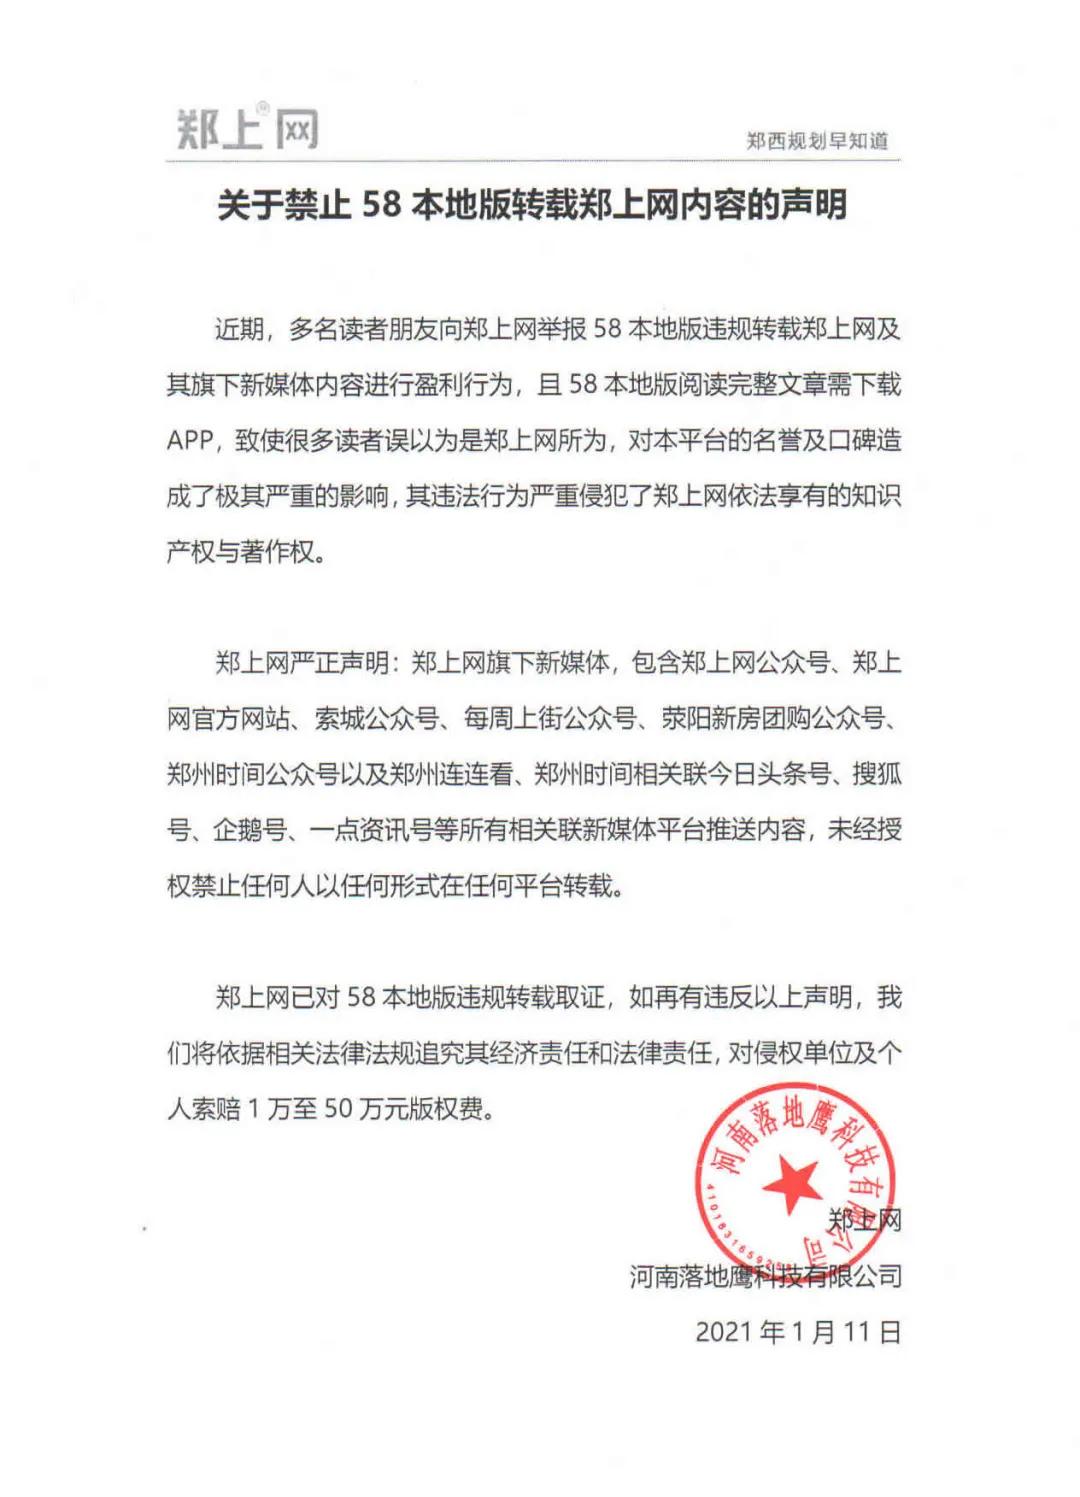 关于禁止58本地版转载郑上网内容的声明